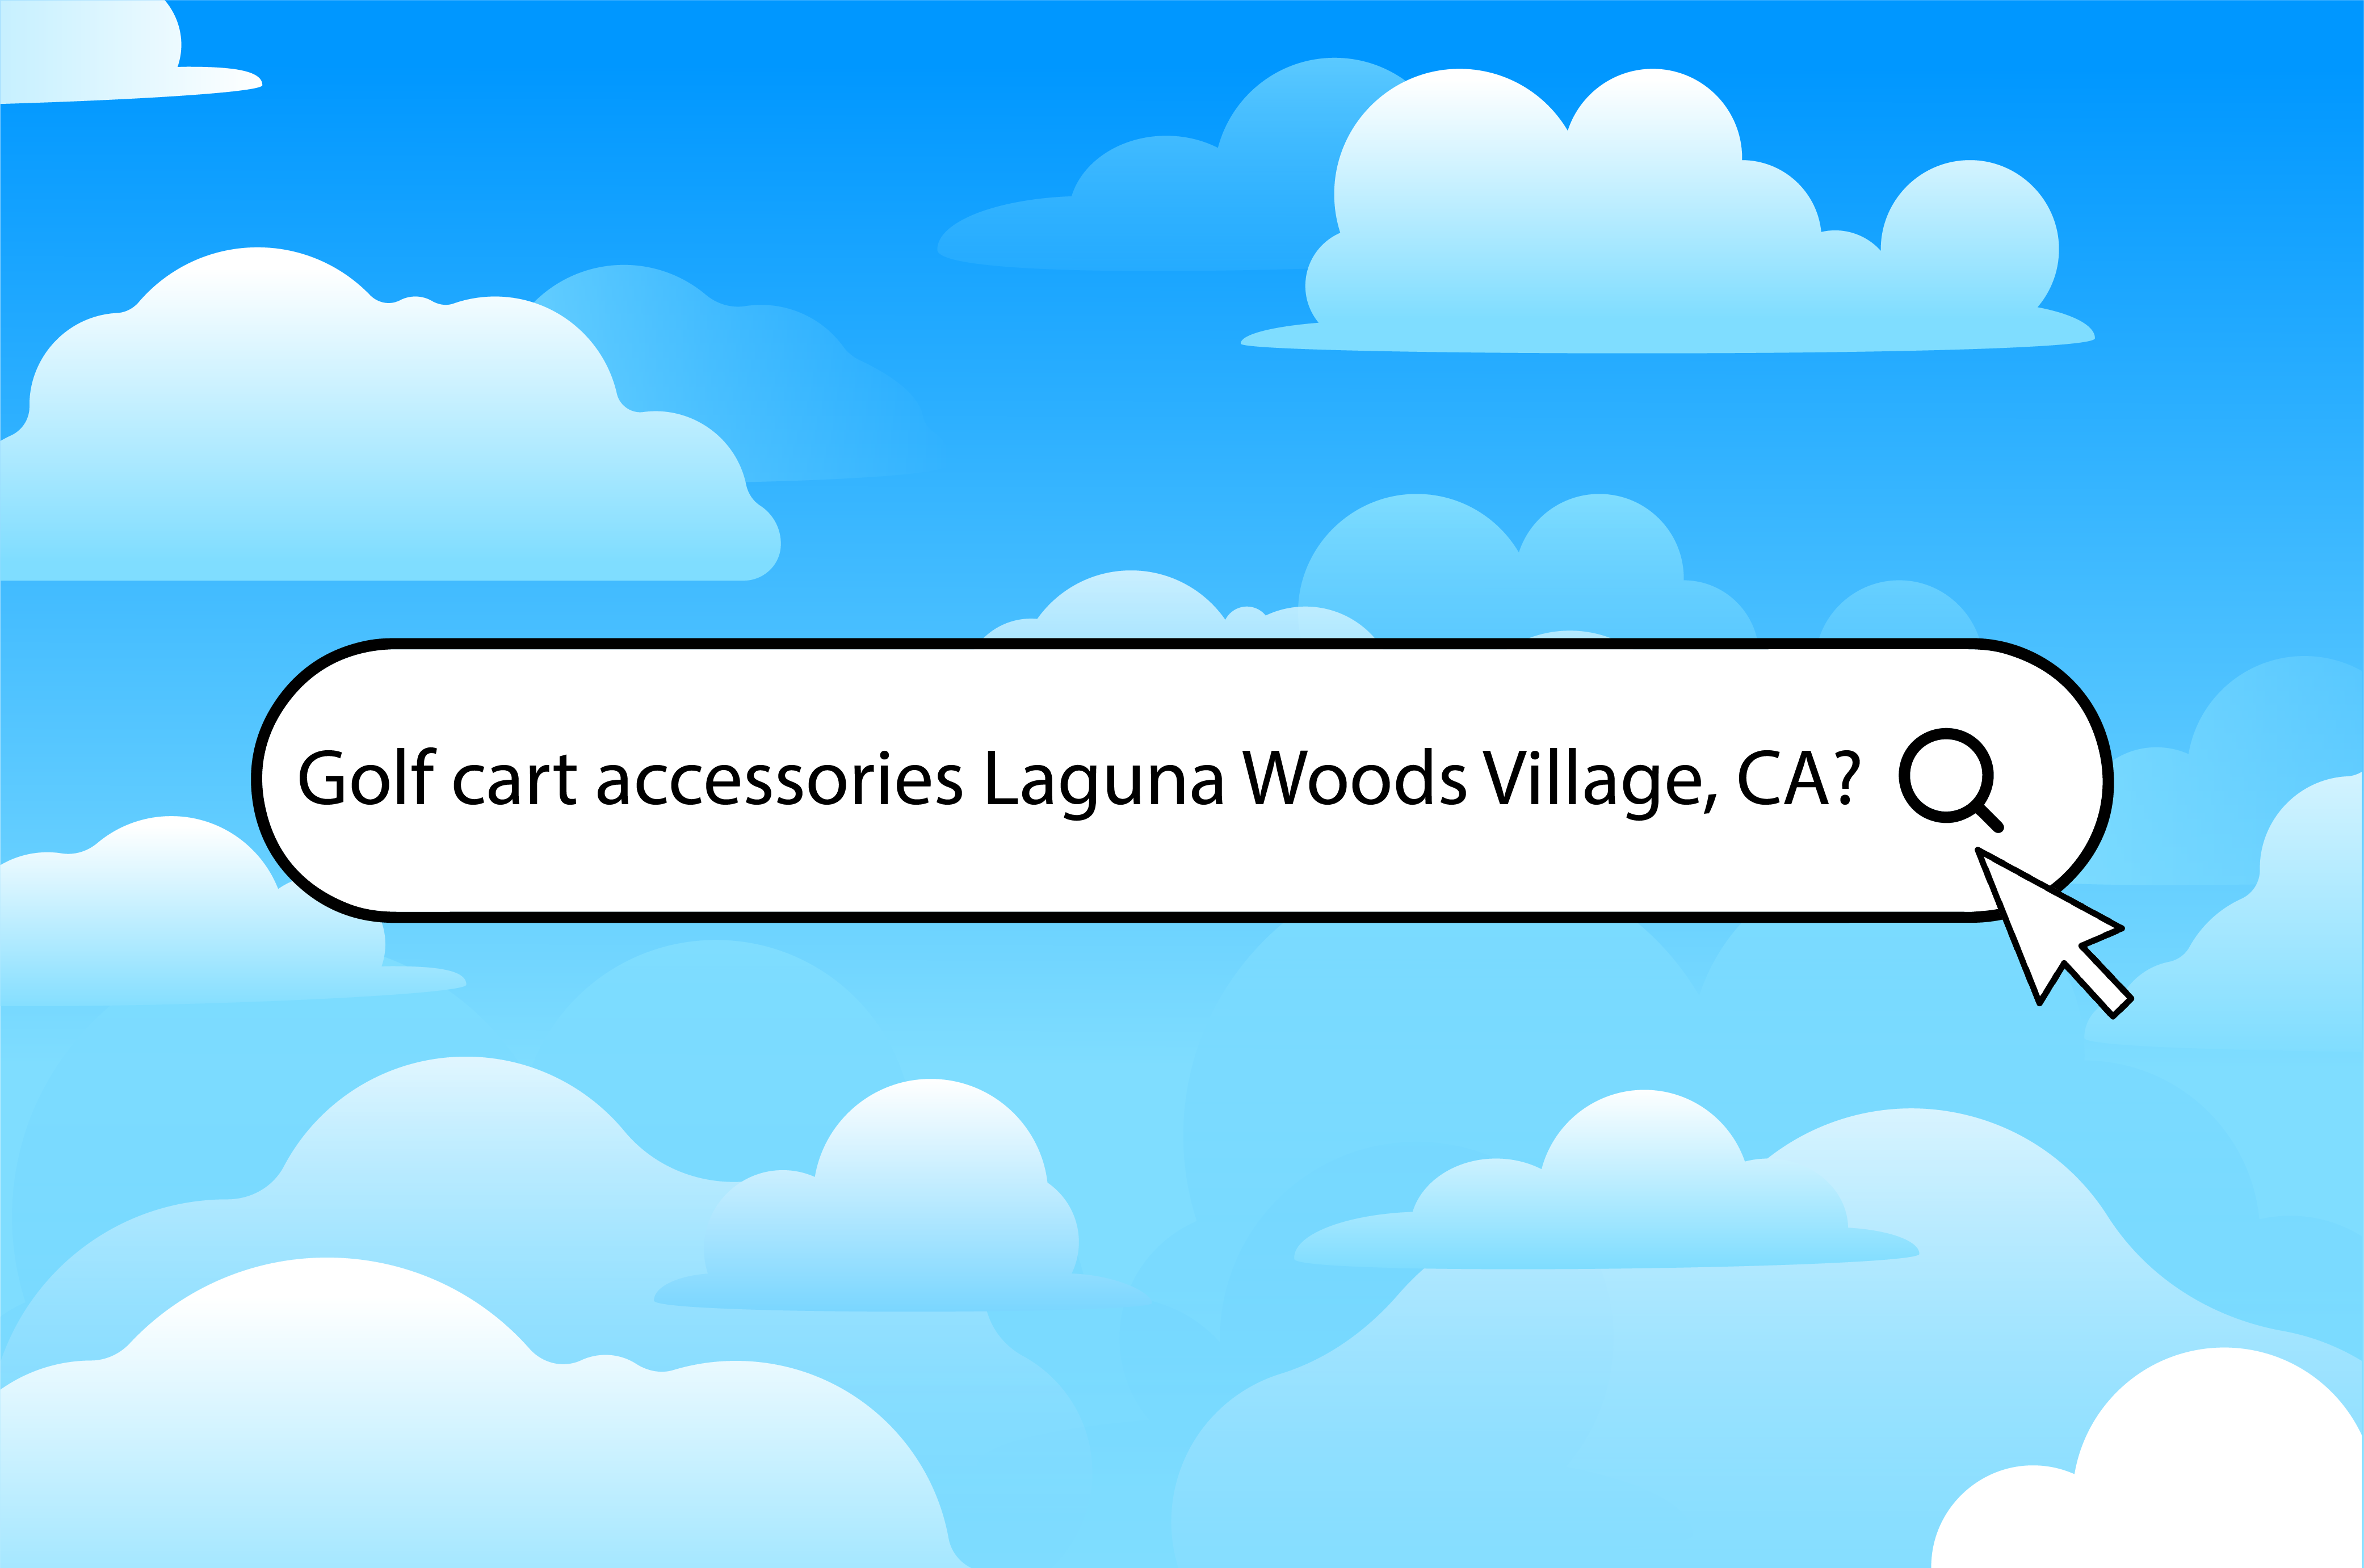 Three ways to find golf cart accessories in Laguna Woods Village, CA